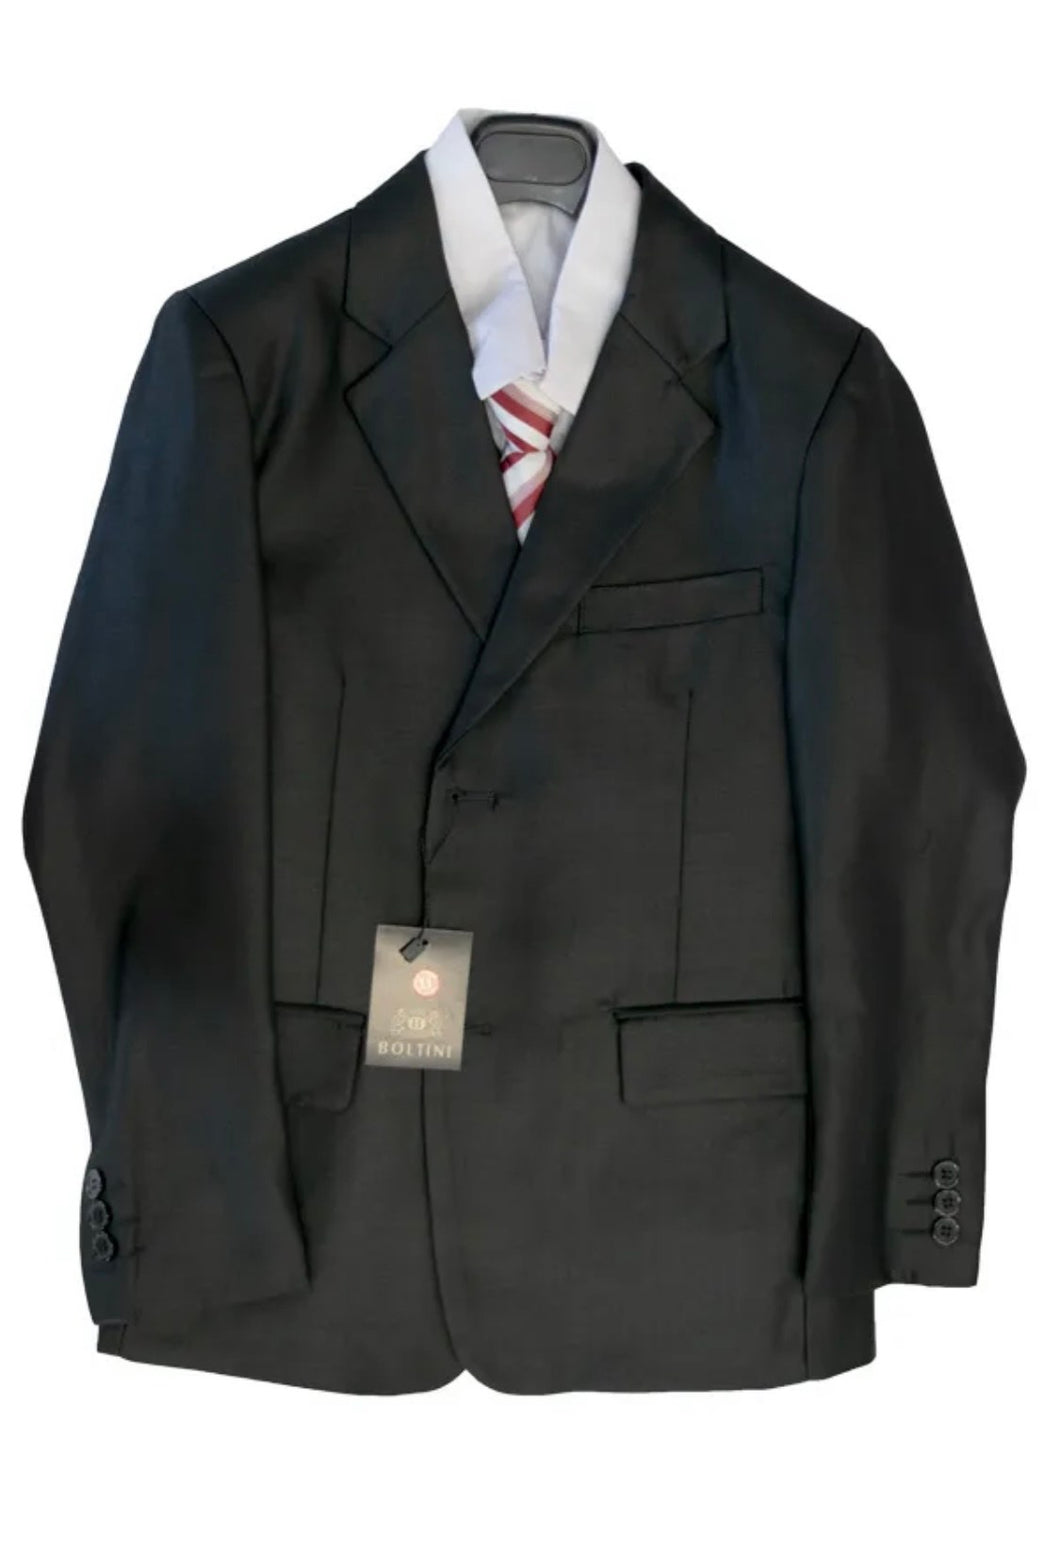 Boltini Semi Shiny Black 5pc Suit